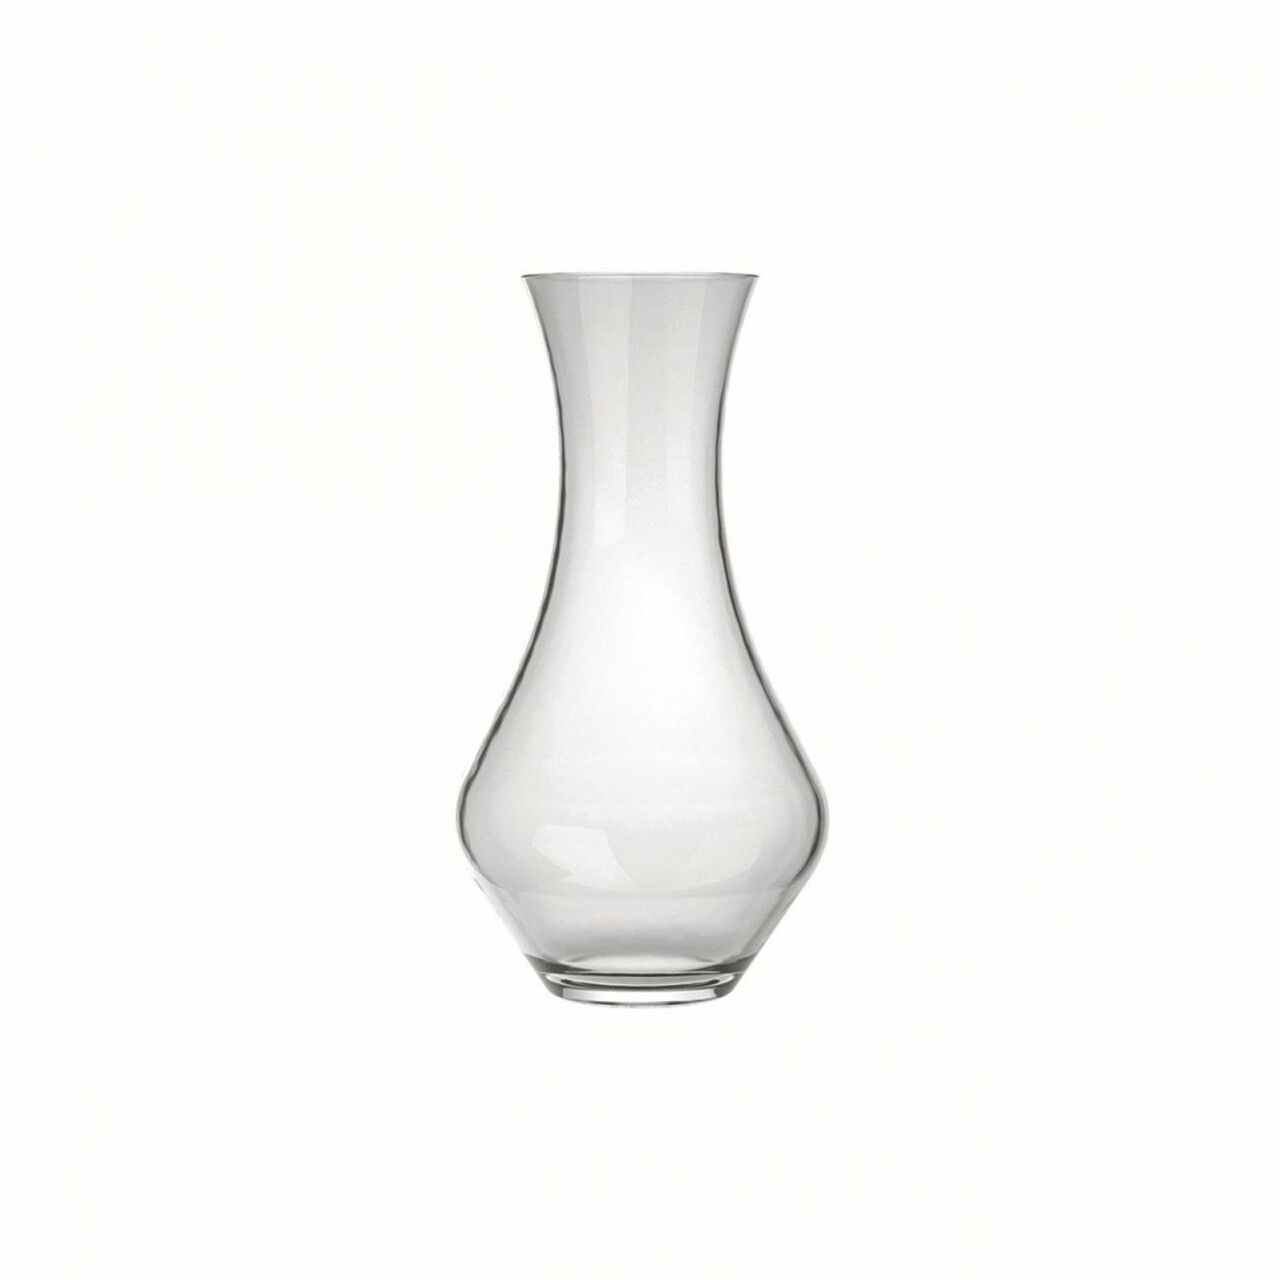 Decantor Nadir Hourglass, 12.5 X 22 Cm, 950 Ml, Sticla Rezistenta,  Transparent